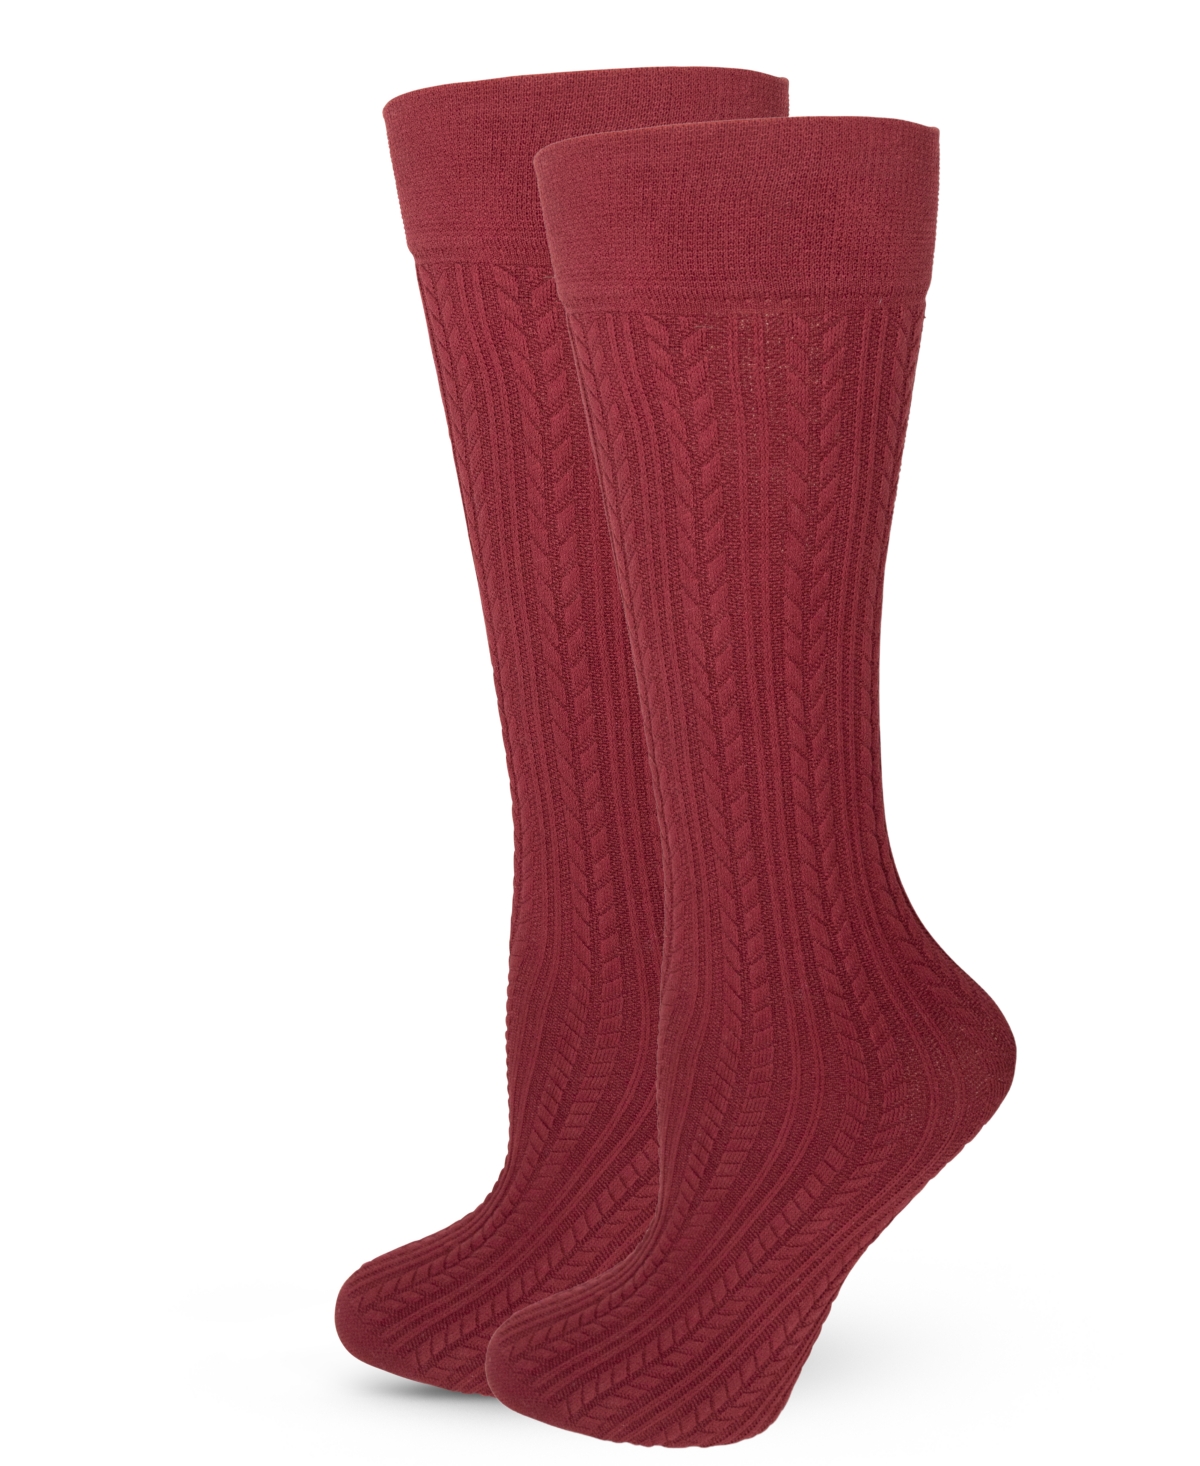 Women's Weave Knitted Knee-High Socks - Burgundy